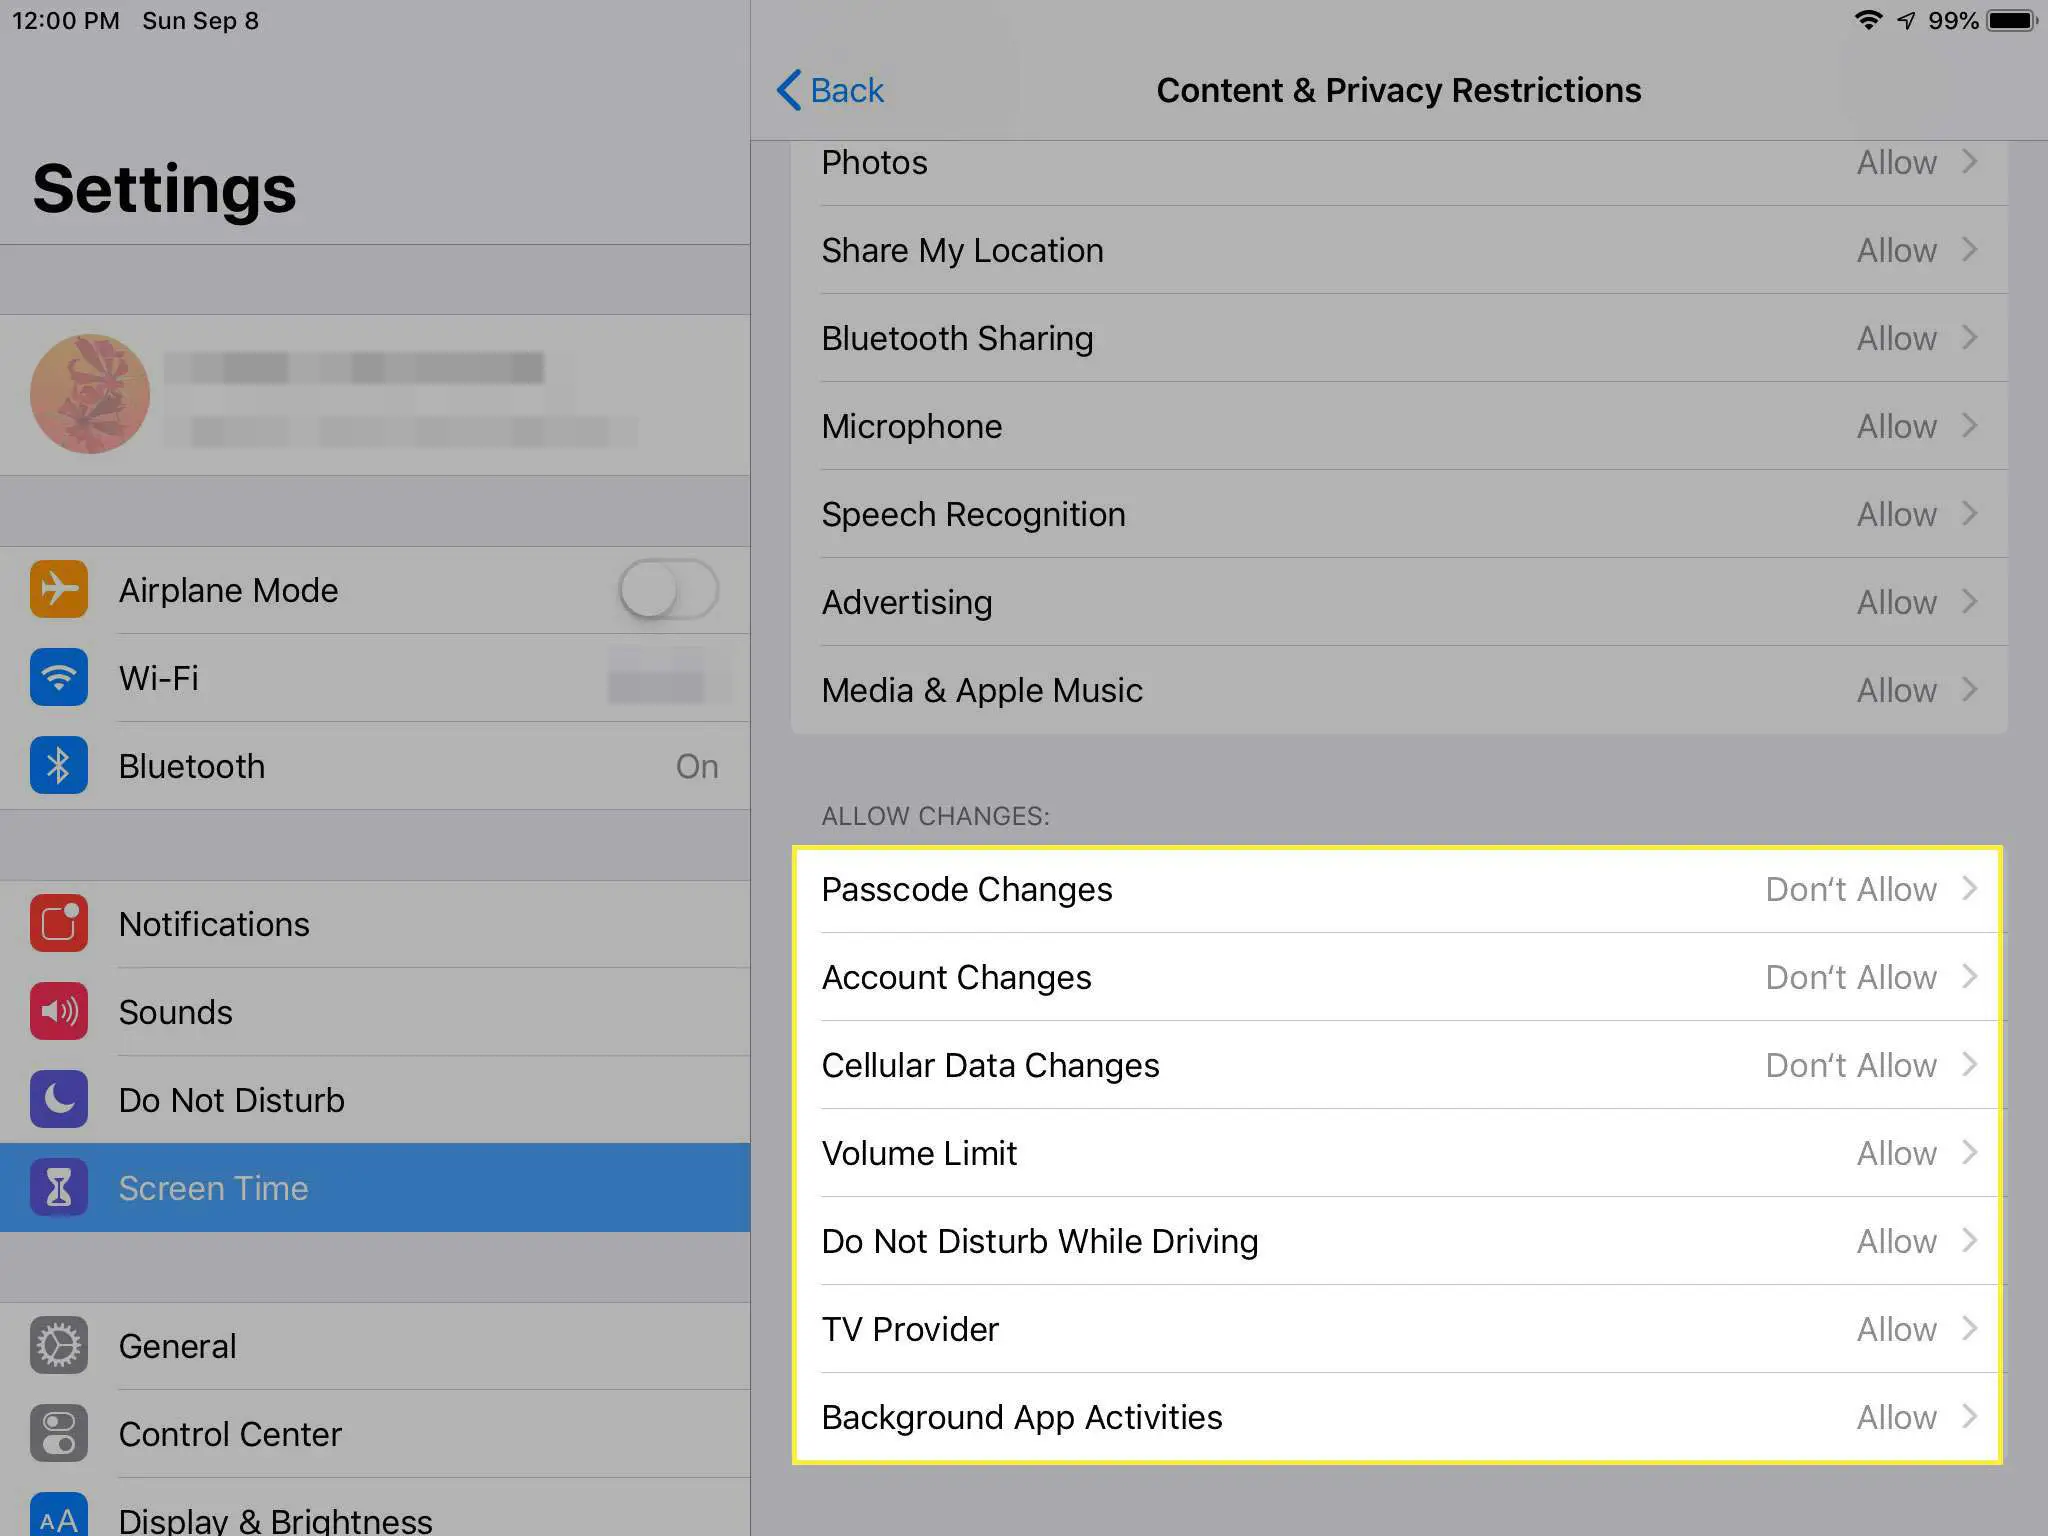 Uma captura de tela das restrições de conteúdo e privacidade em um iPad com a seção Permitir alterações destacada